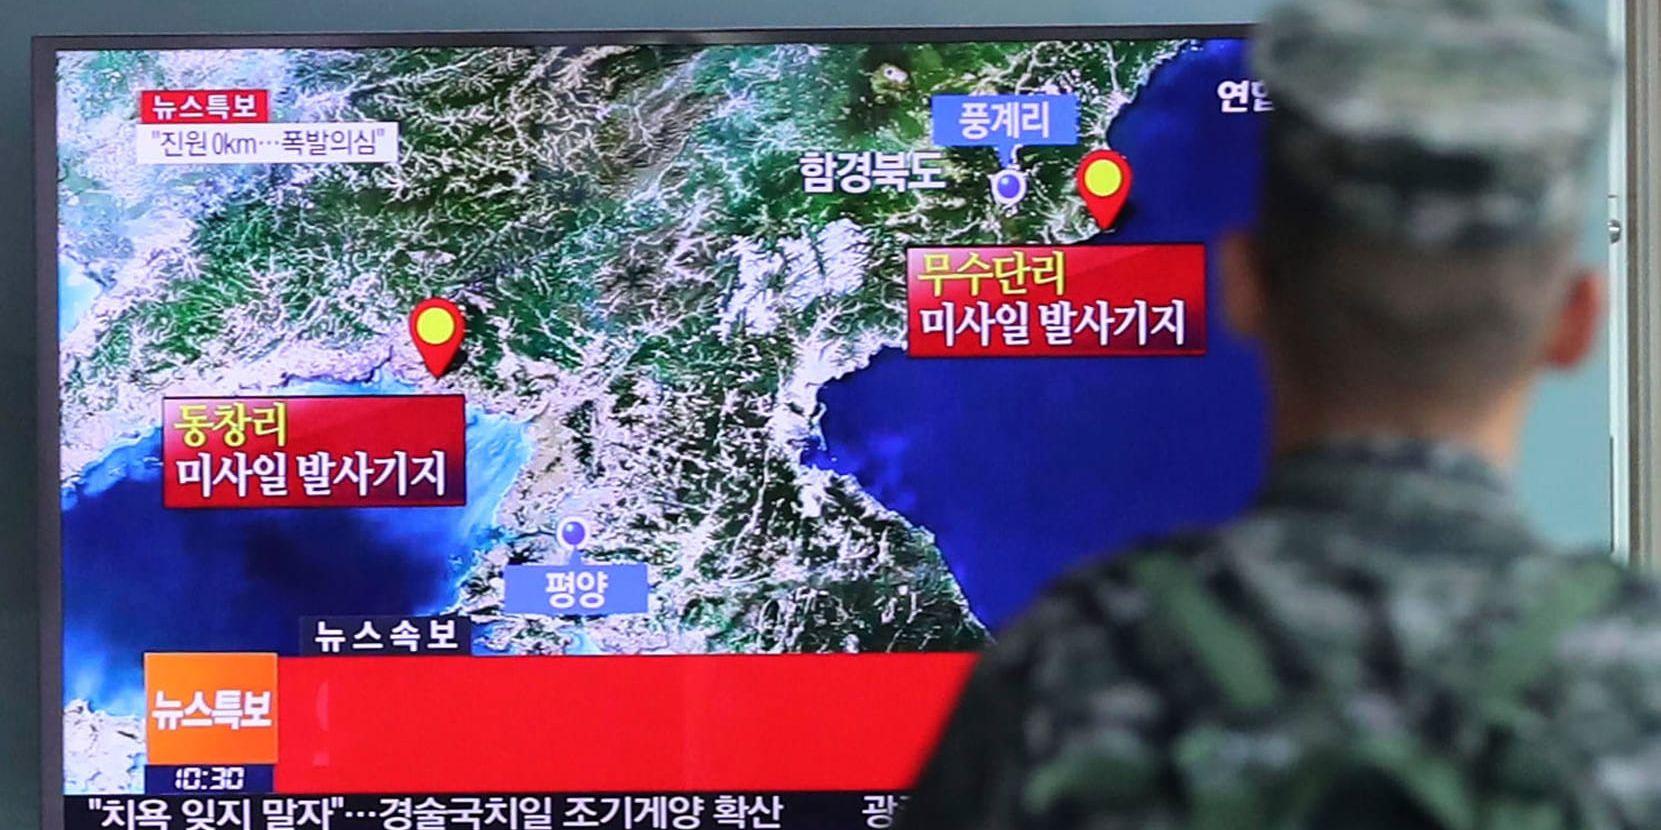 En sydkoreansk tv-sändning om en provsprängning i Nordkorea, med Punggye-ri utmärkt uppe till höger i bild. Arkivbild.